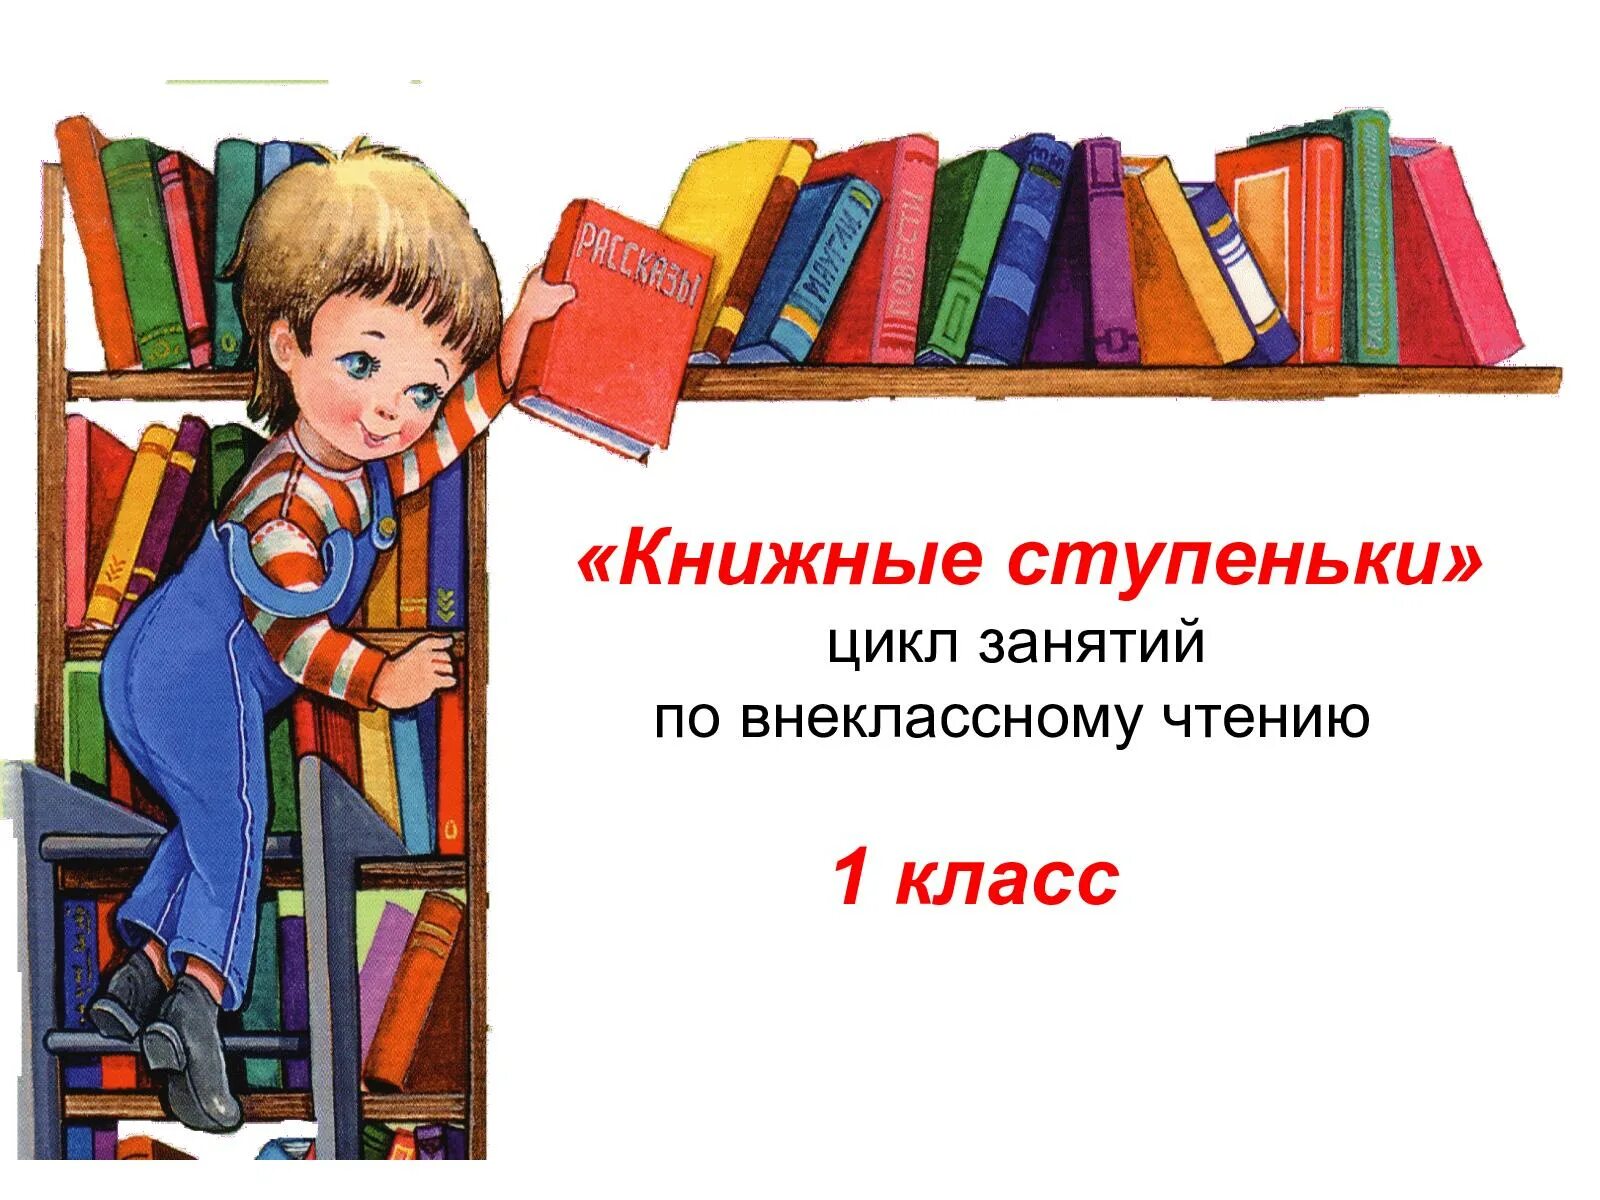 Библиотеки читать литературу. Стихи про библиотеку. Стихи о библиотеке для детей. Стихотворение про библиотеку для детей. Книга стихов.